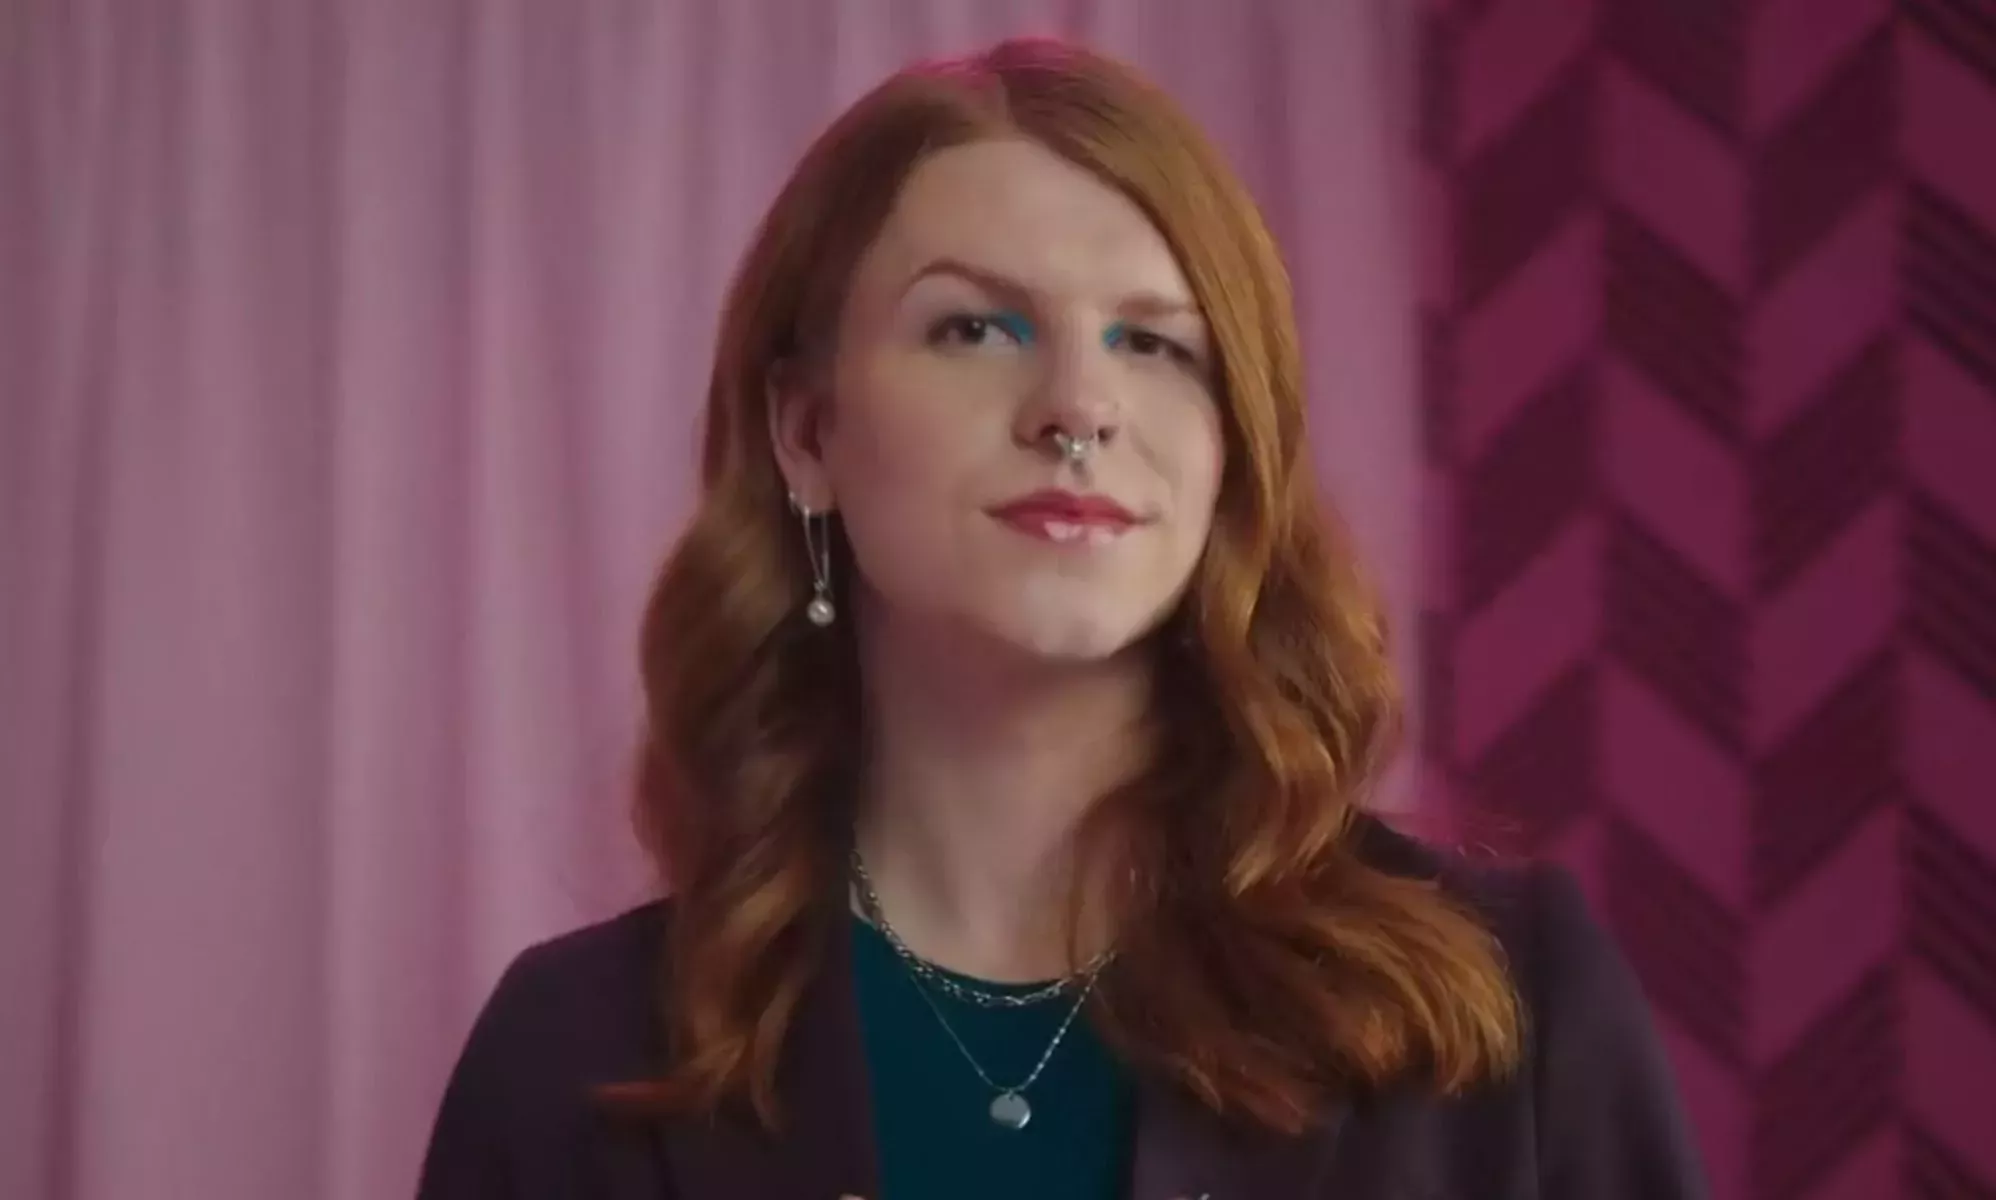 Hershey's presenta a una mujer trans en un anuncio y los copos de nieve de derechas amenazan con boicotearlo